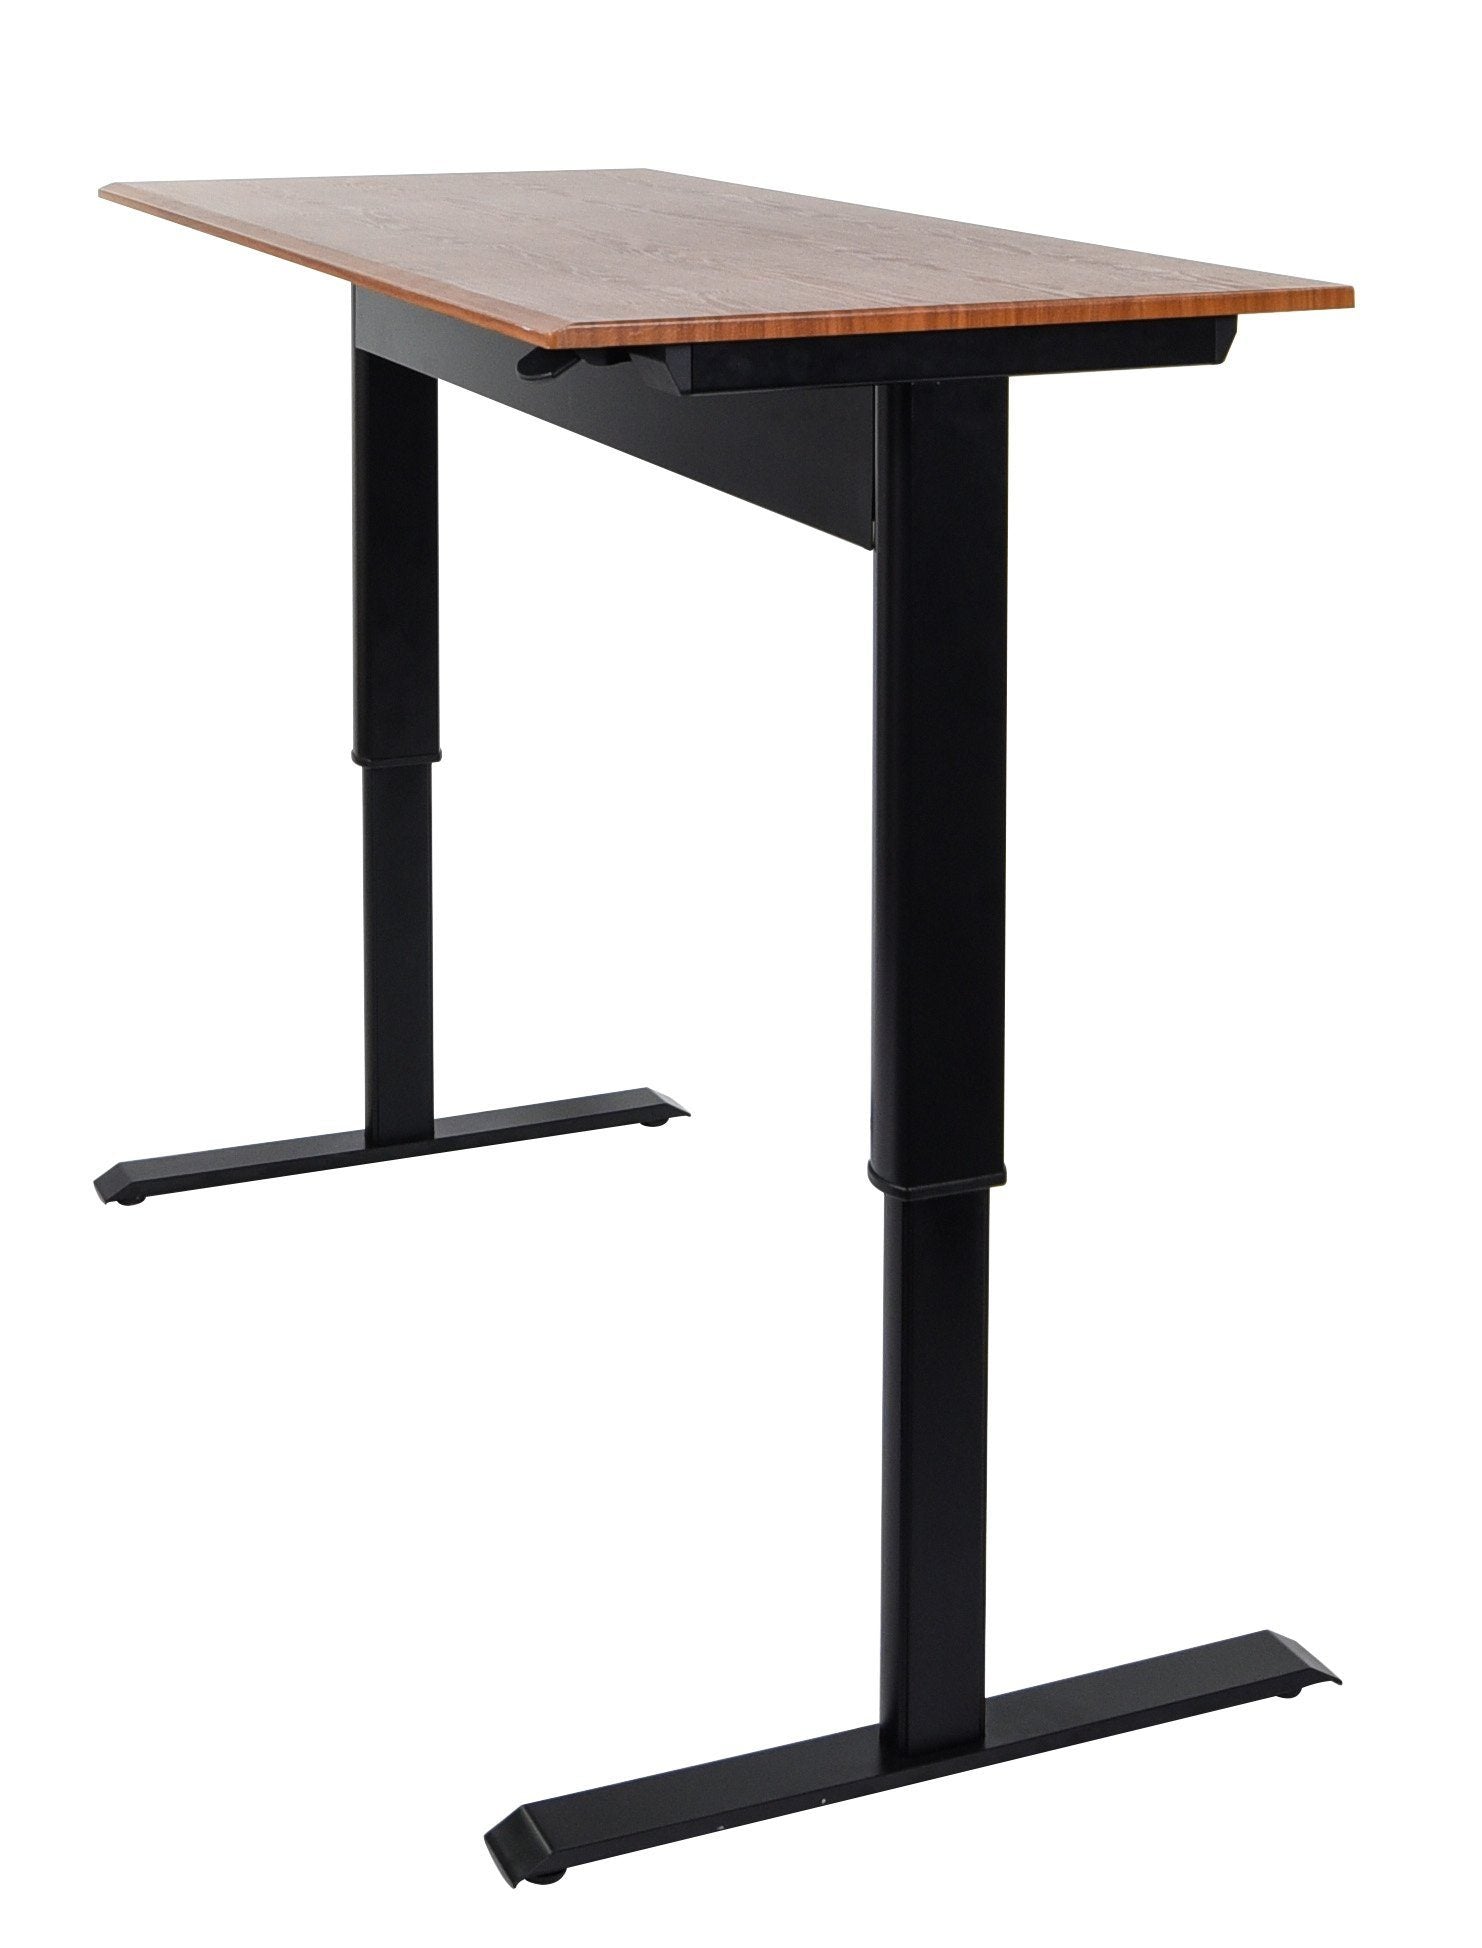 Luxor Pneumatic Adjustable Height Standing Desk